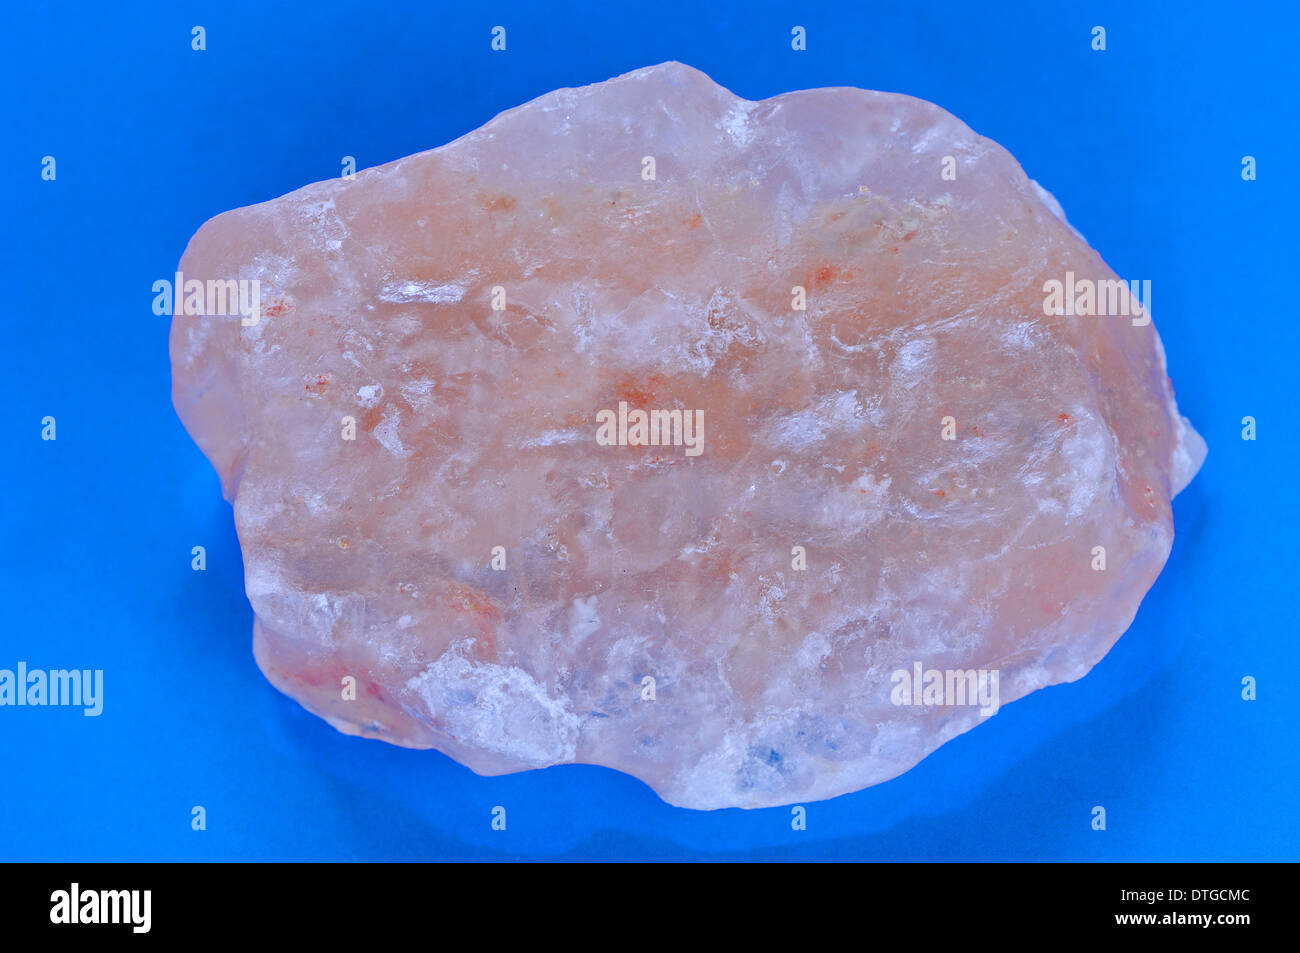 Himalaya Salt or Rock Salt Stock Photo